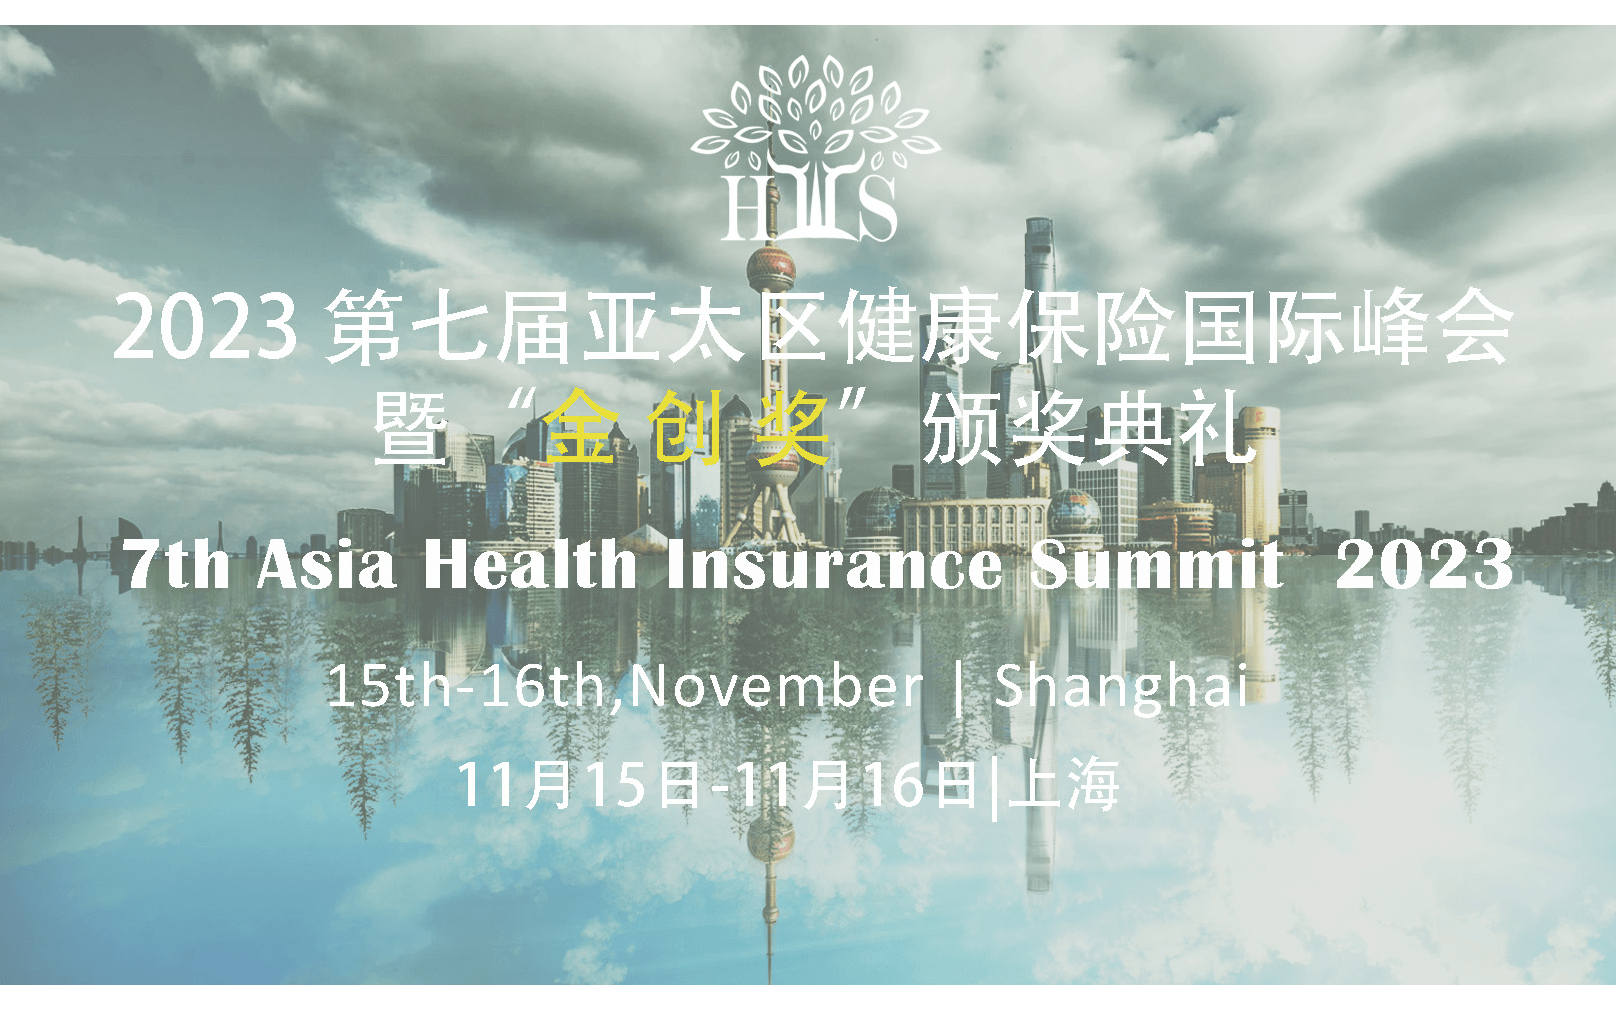 2023 第七届亚太区健康险国际峰会暨“金创奖”颁奖典礼